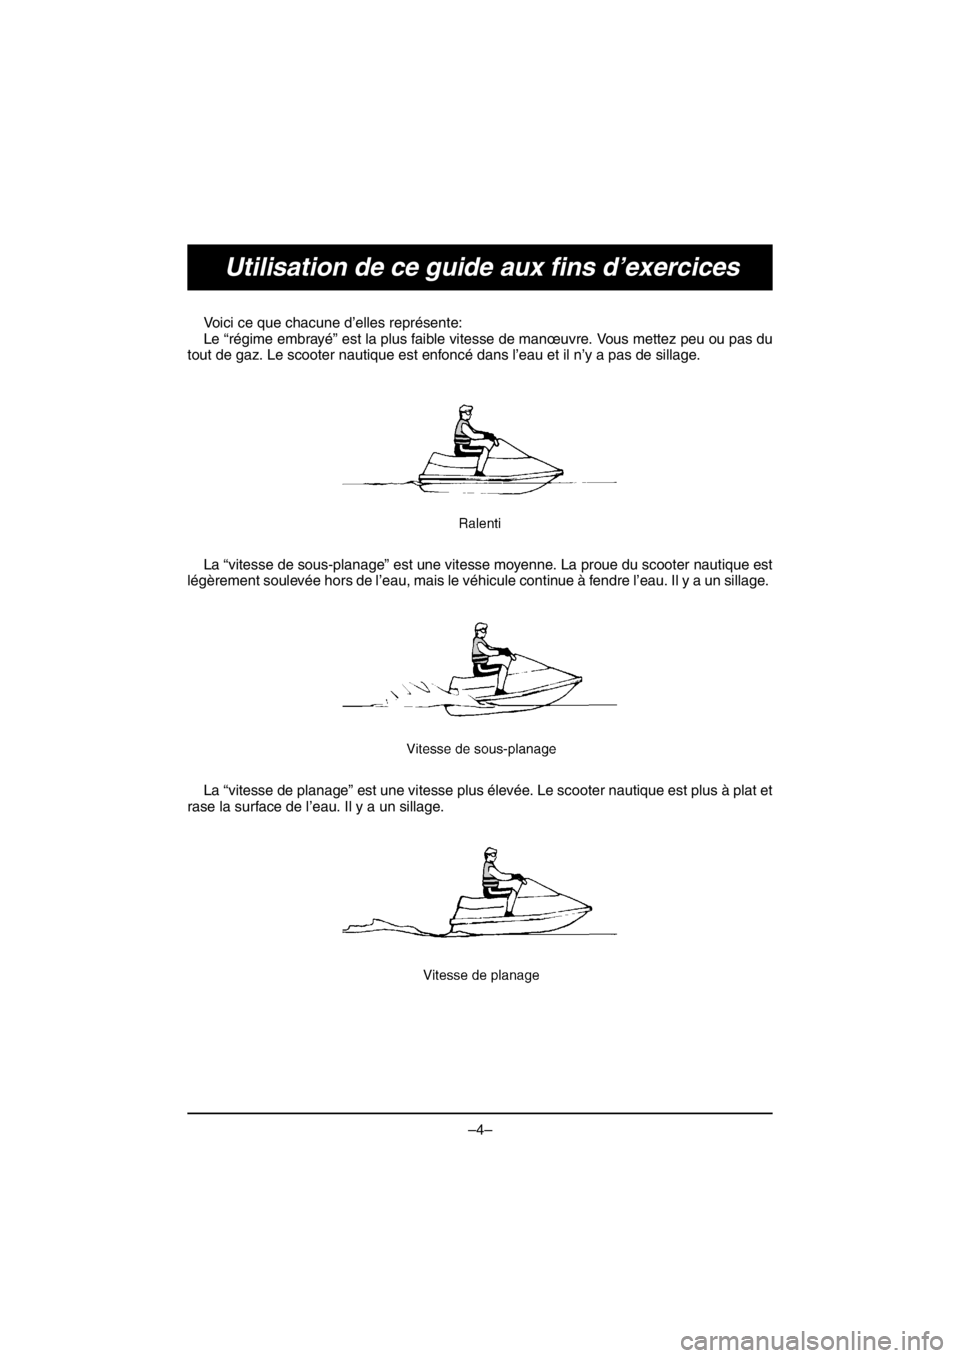 YAMAHA V1 2016  Notices Demploi (in French) –4–
Utilisation de ce guide aux fins d’exercices
Voici ce que chacune d’elles représente: 
Le “régime embrayé” est la plus faible vitesse de manœuvre. Vous mettez peu ou pas du
tout de